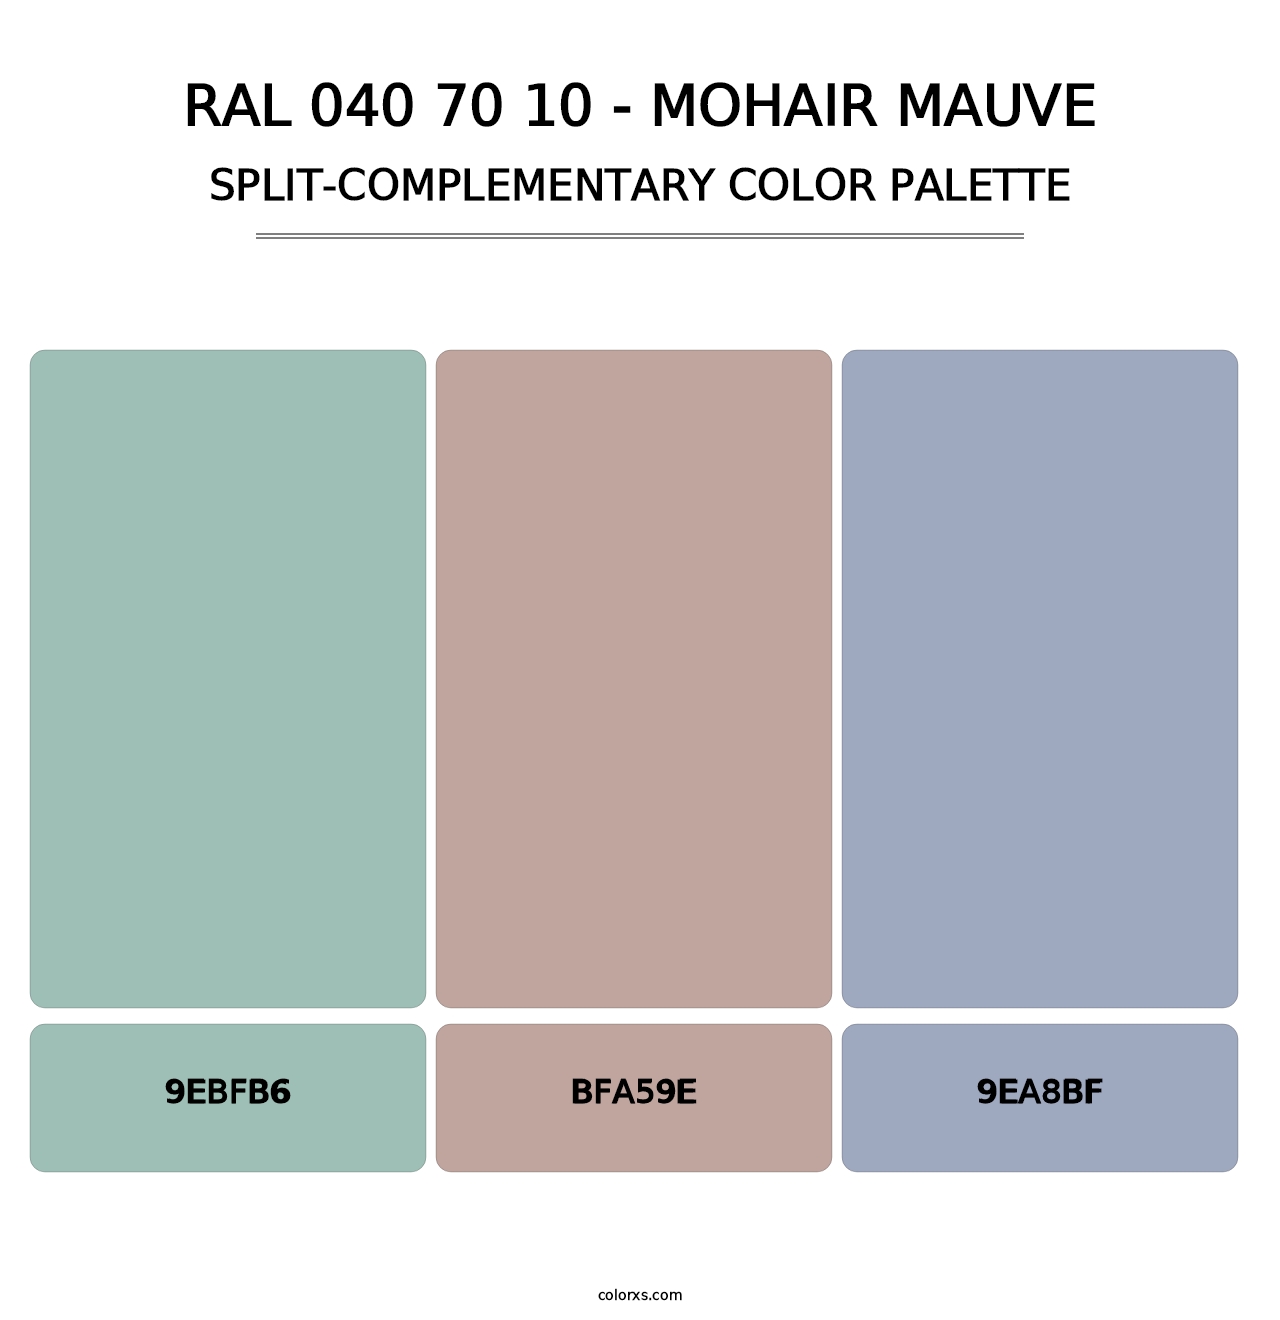 RAL 040 70 10 - Mohair Mauve - Split-Complementary Color Palette